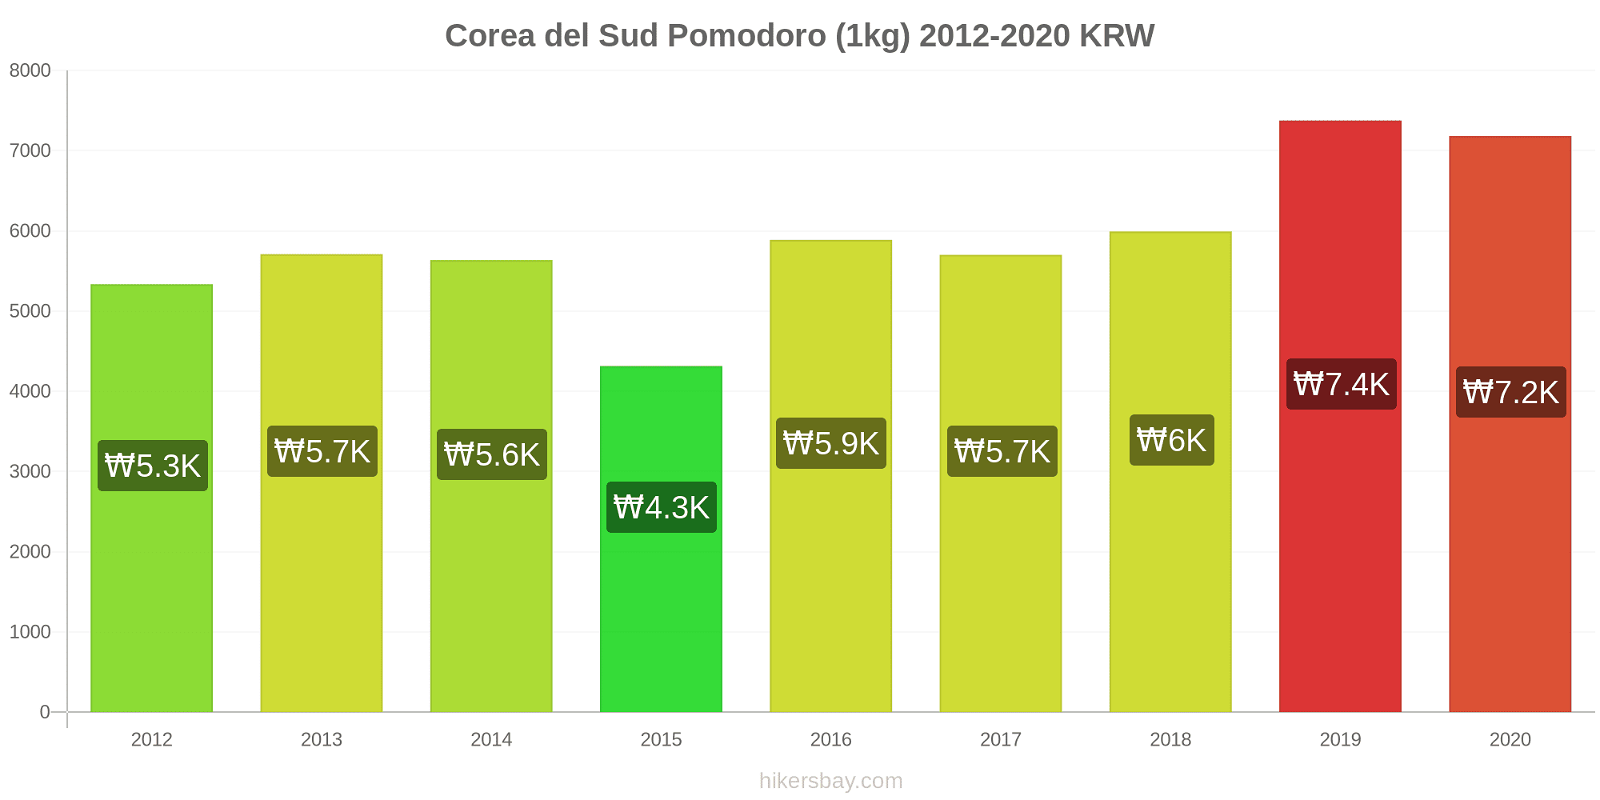 Corea del Sud variazioni di prezzo Pomodoro (1kg) hikersbay.com